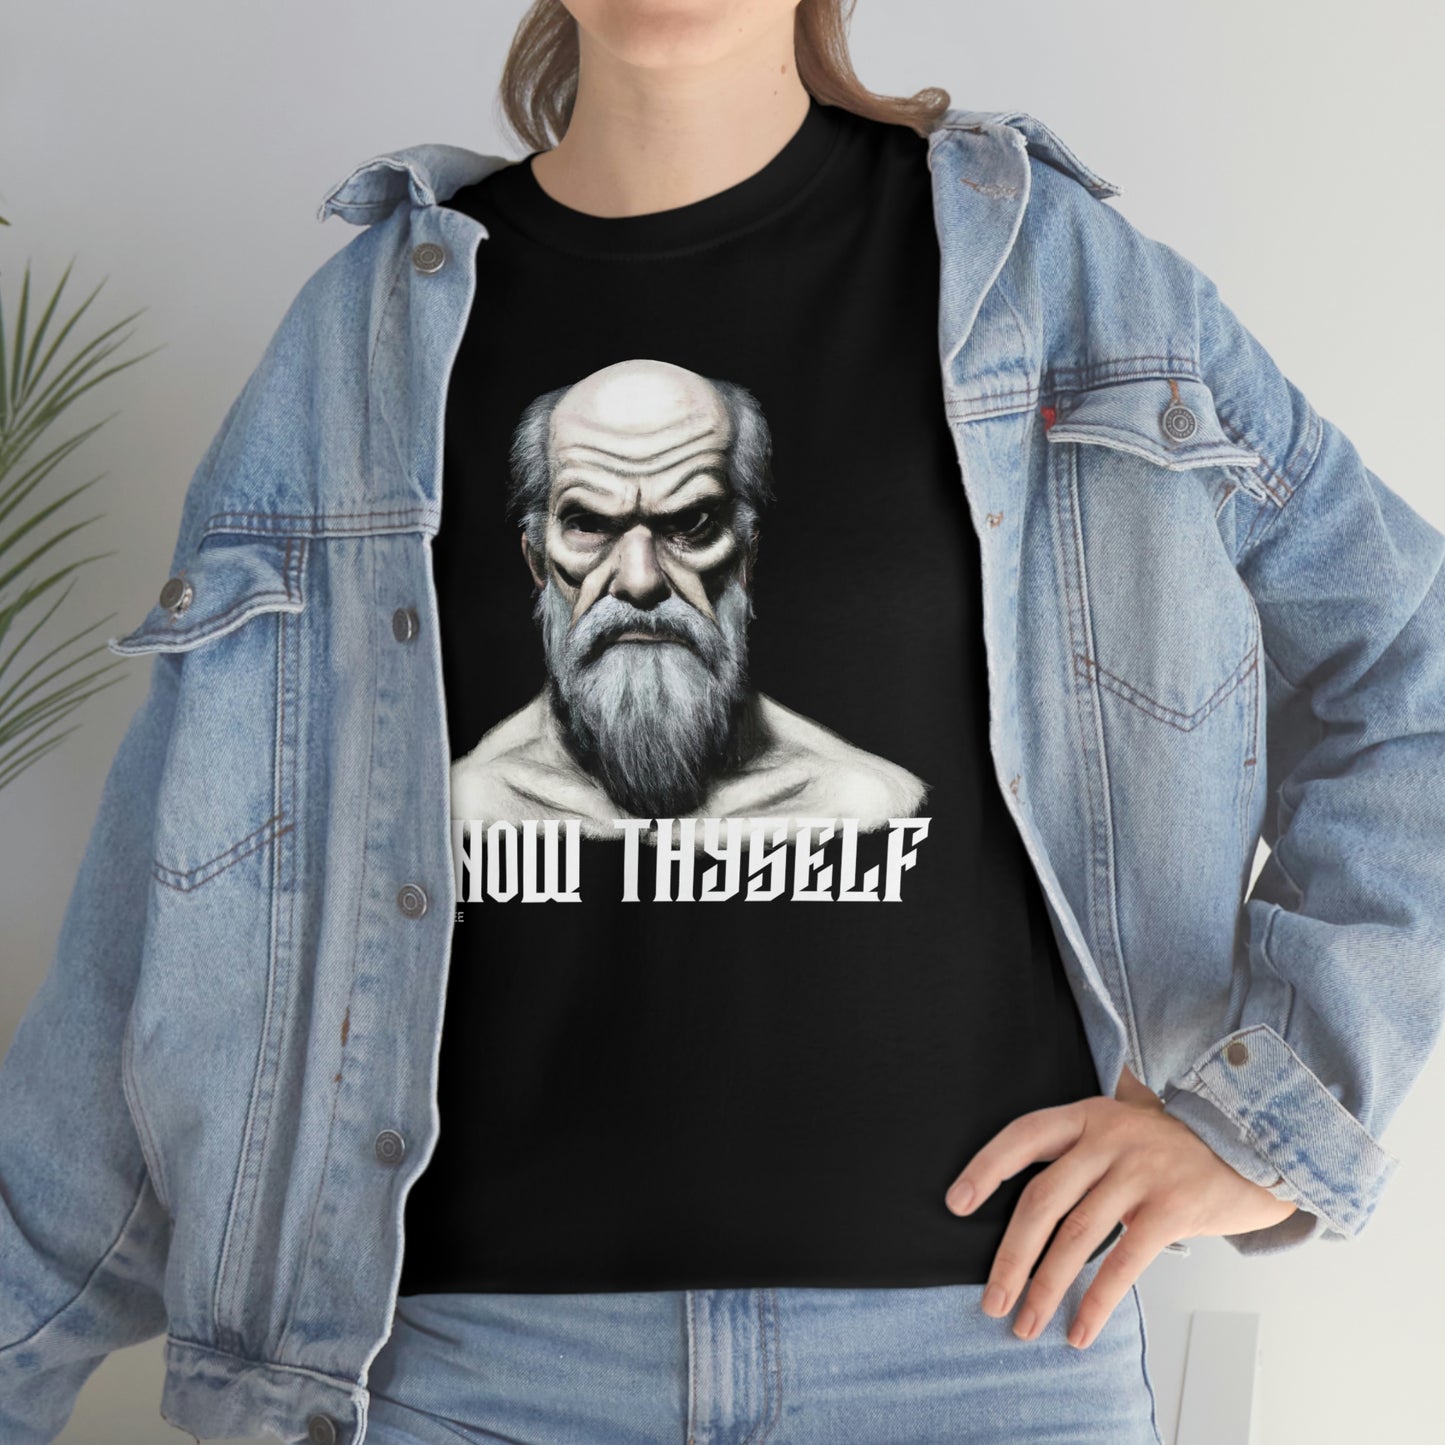 Socrates T-Shirt